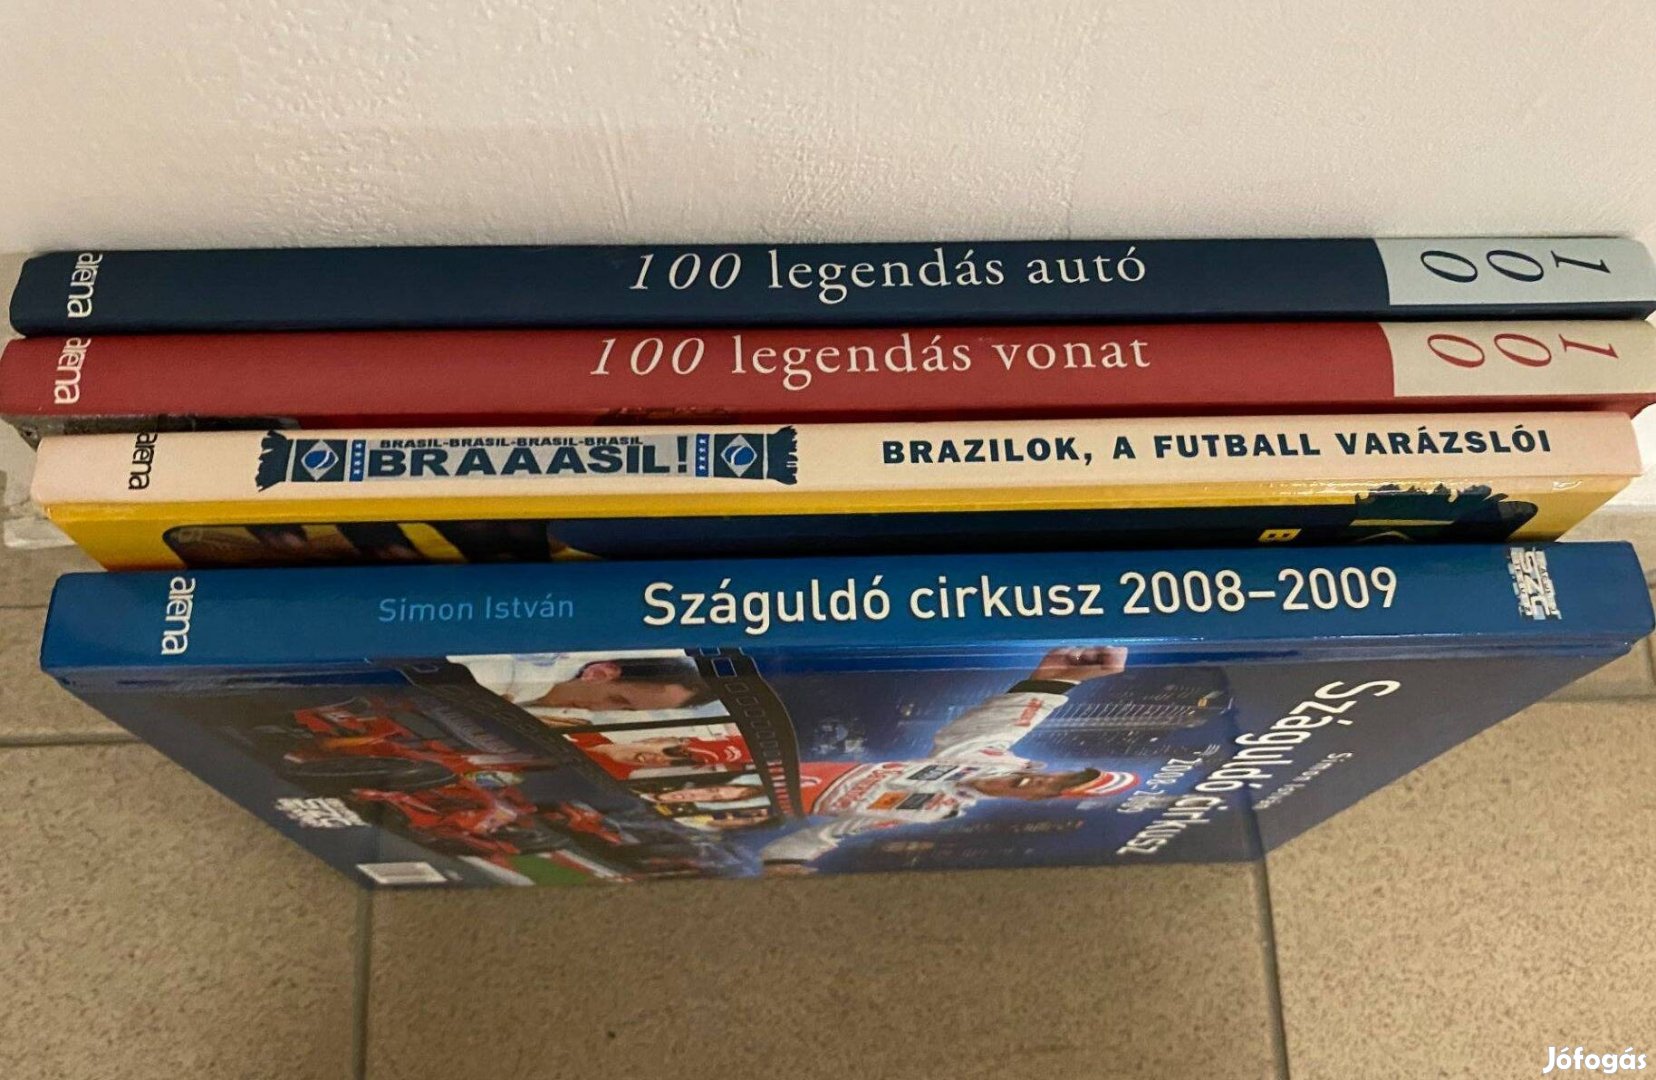 100 legendás autó, 100 legendás vonat, Száguldó cirkusz, Brazilok